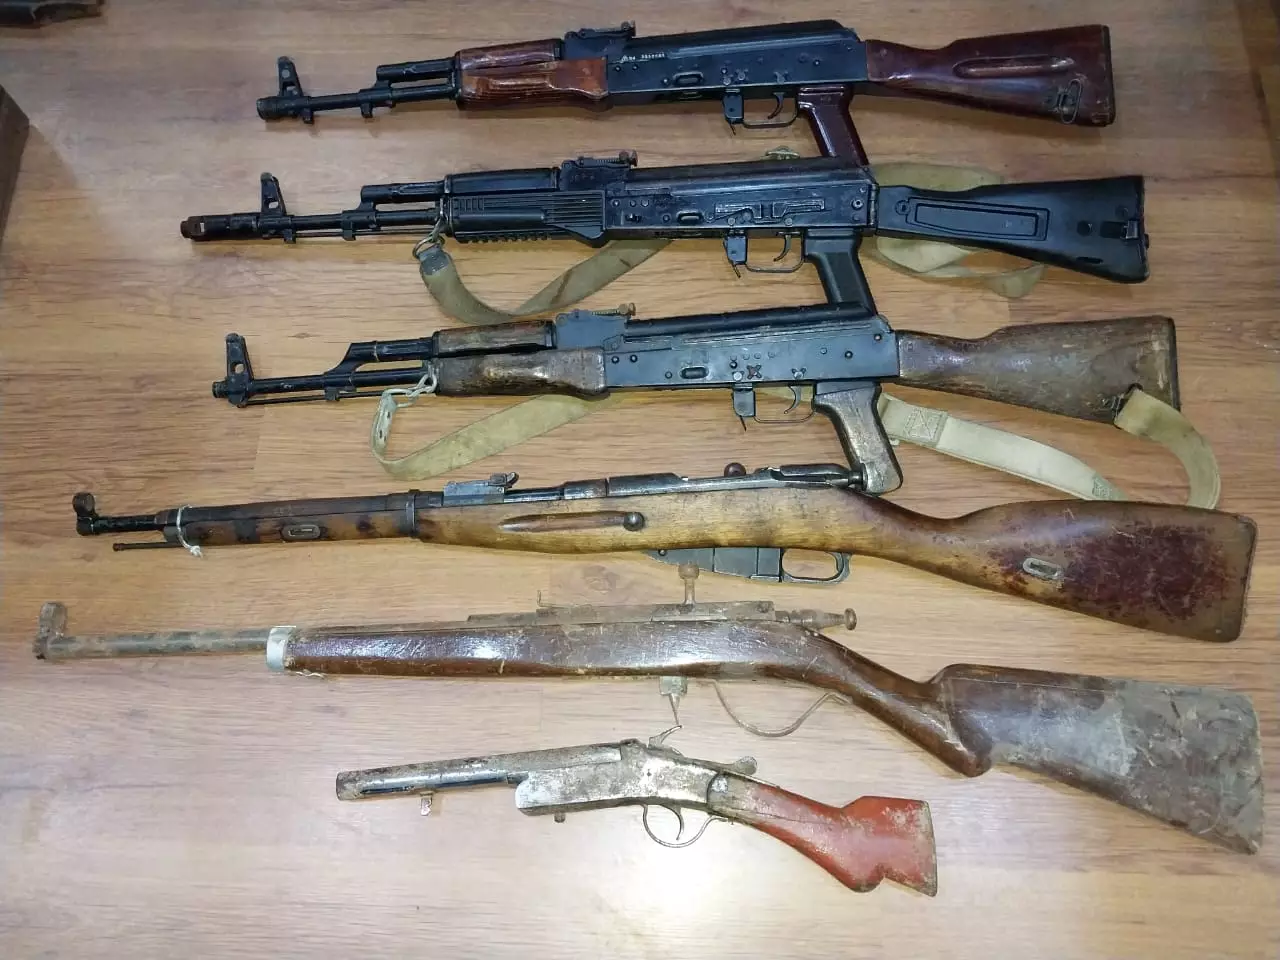 Tərtər rayonunda silahlar aşkar edilib - FOTO